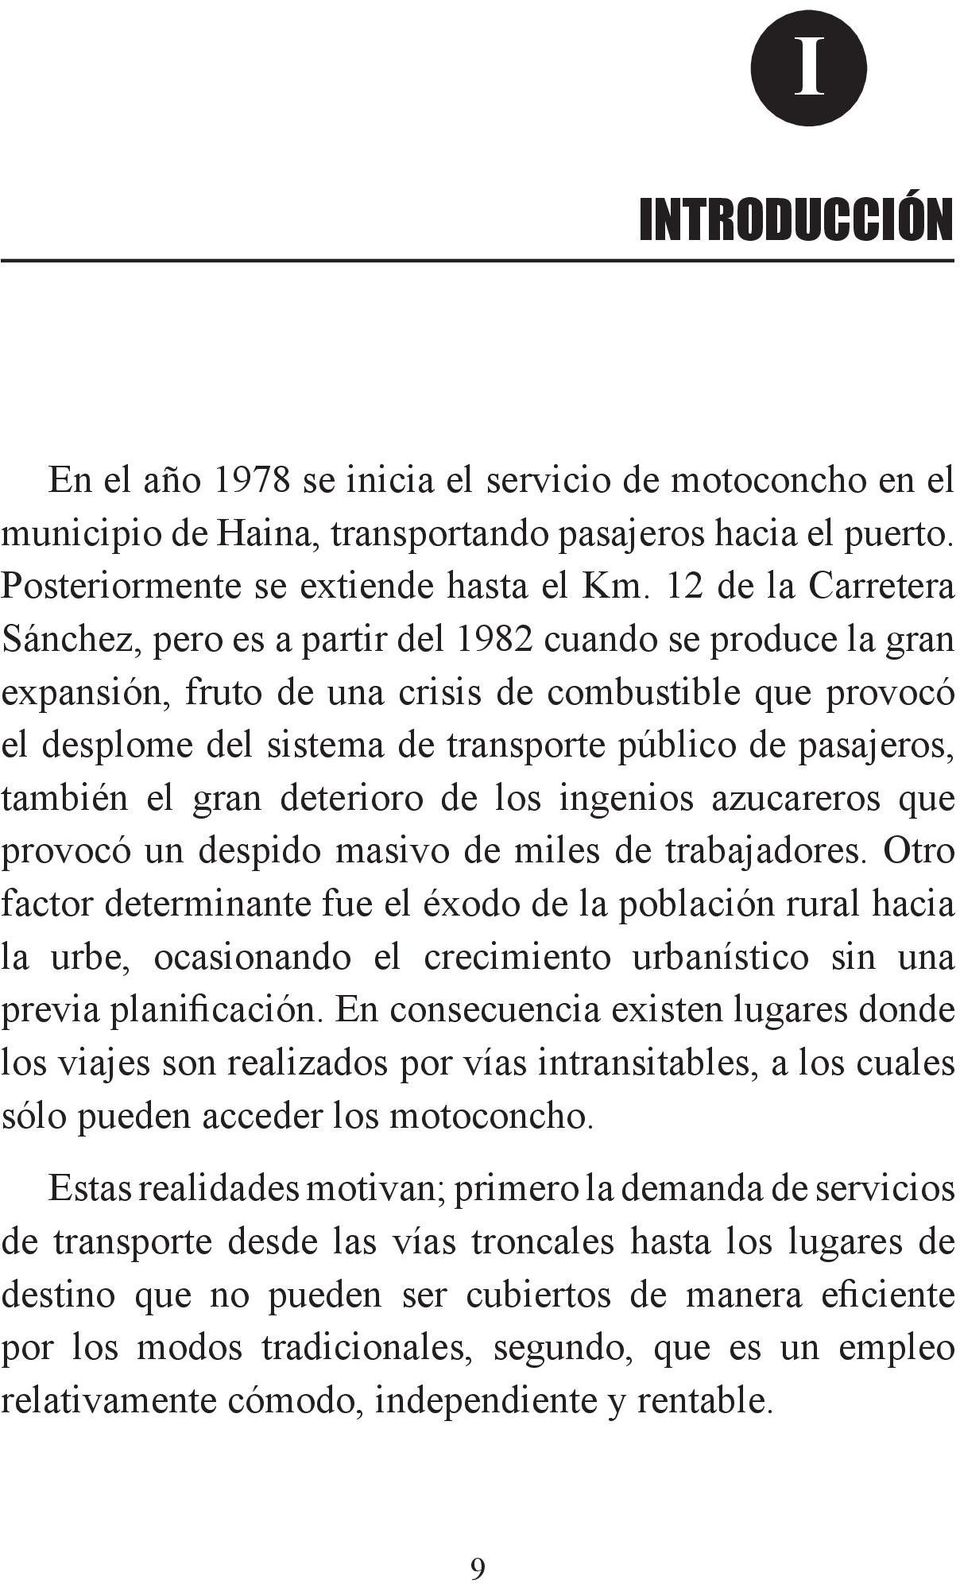 12 de la Carretera Sánchez, pero es a partir del 1982 cuando se produce la gran expansión, fruto de una crisis de combustible que provocó el desplome del sistema de transporte público de pasajeros,